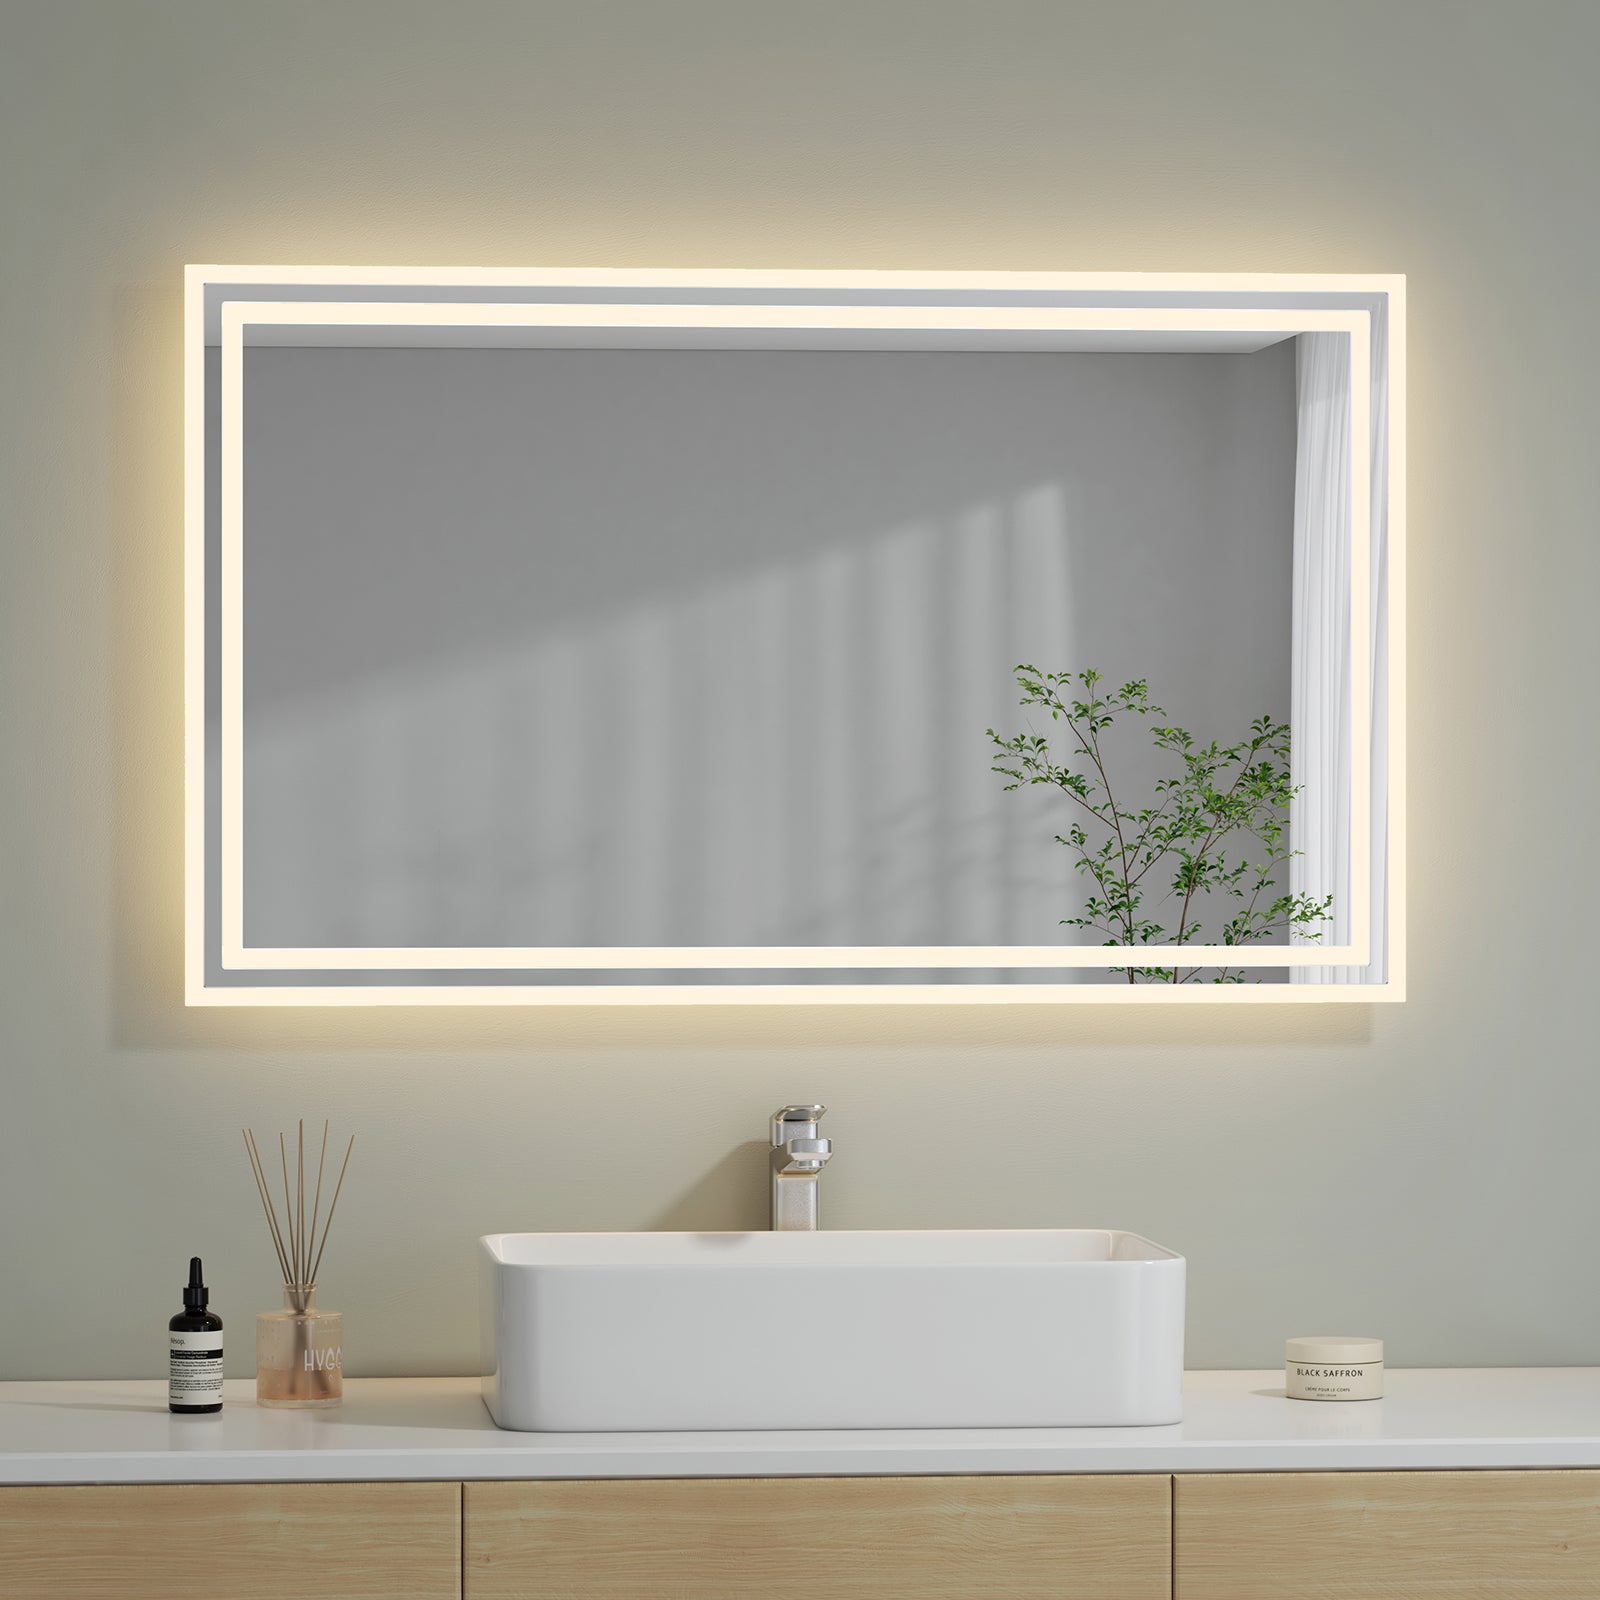 Miroir salle de bain led - 120 x 80 cm, cee:a++, tactile, mural, éclairage  blanc froid/chaud/neutre, fonction mémoire, anti-buée